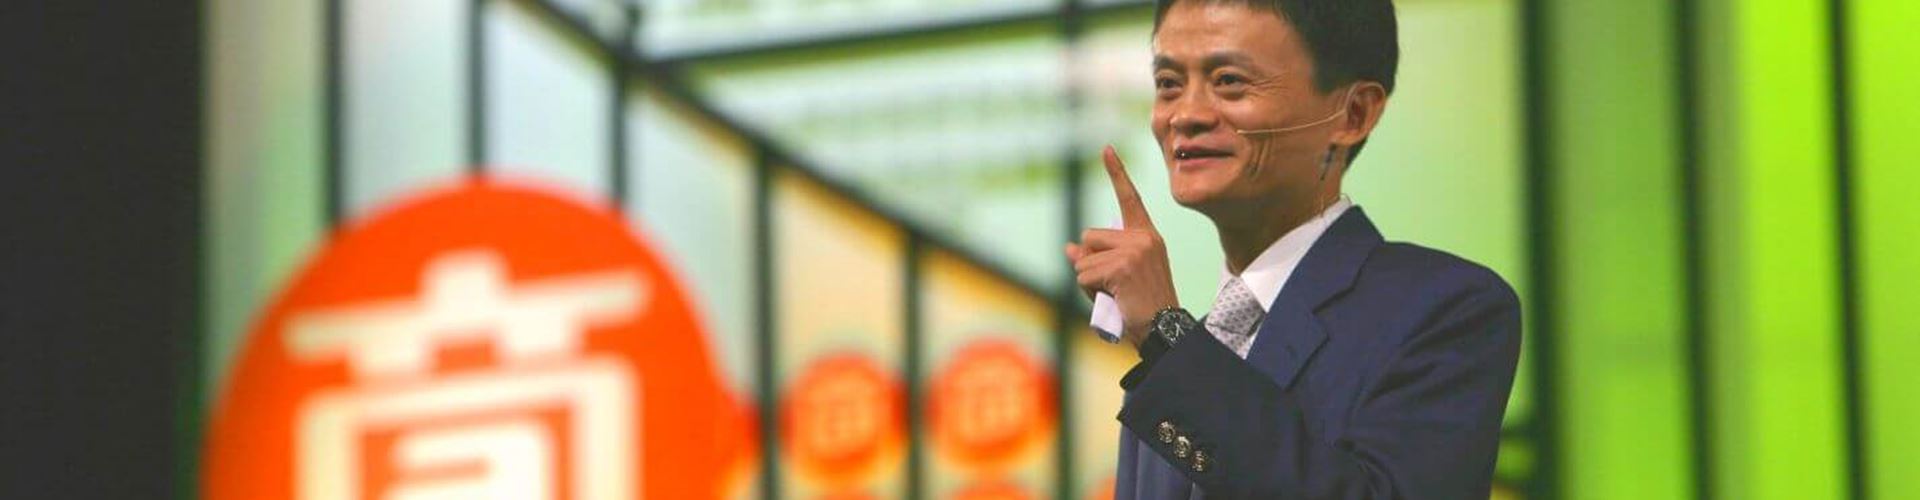 Alibaba IPO Aims To Raise $15 billion